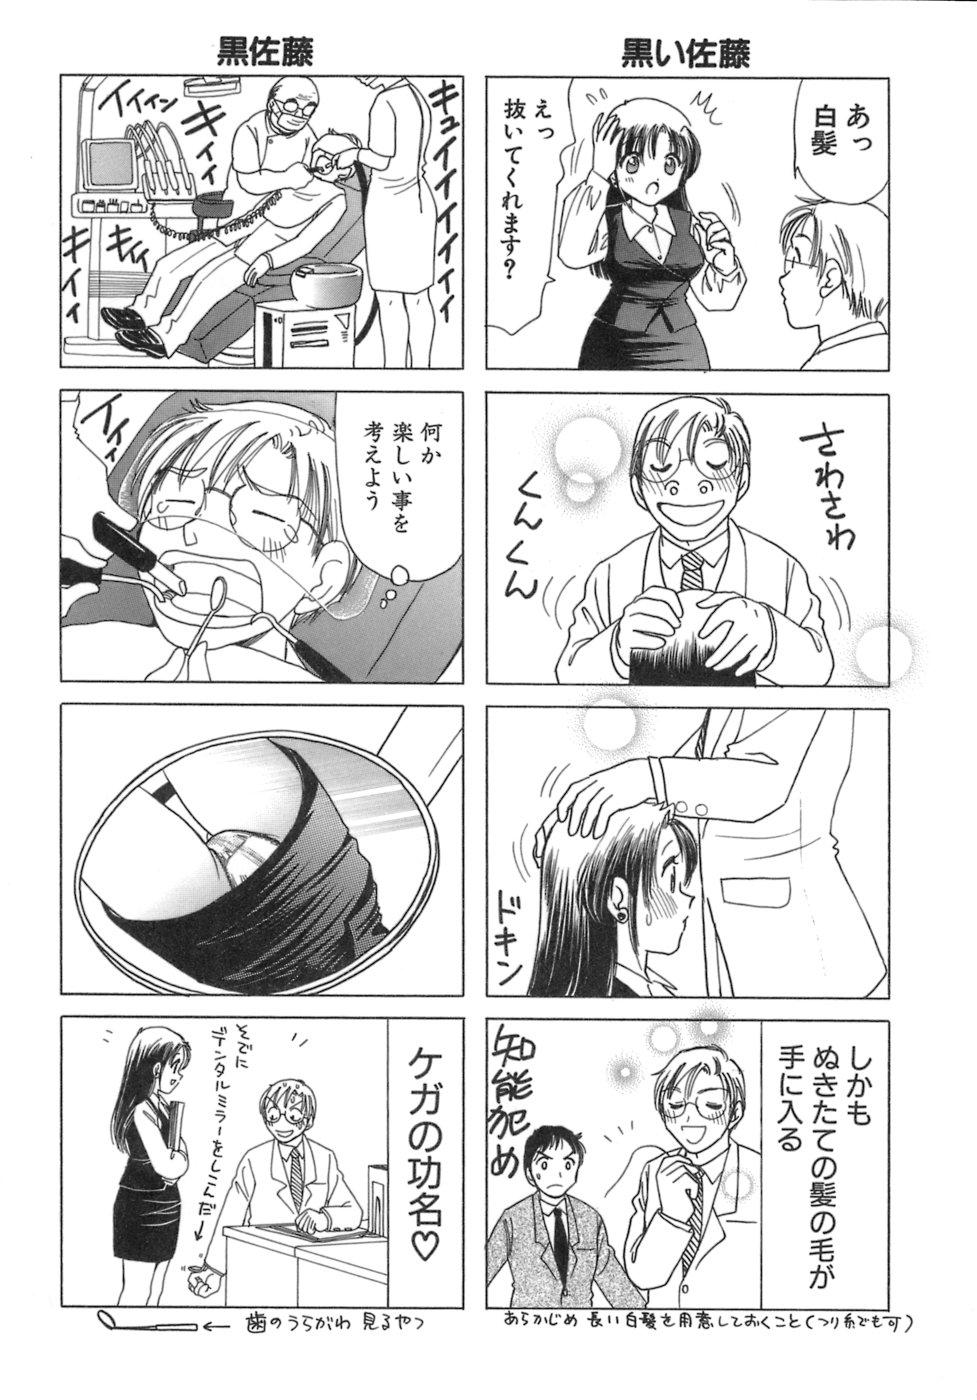 Eriko-kun, Ocha!! Vol.03 53